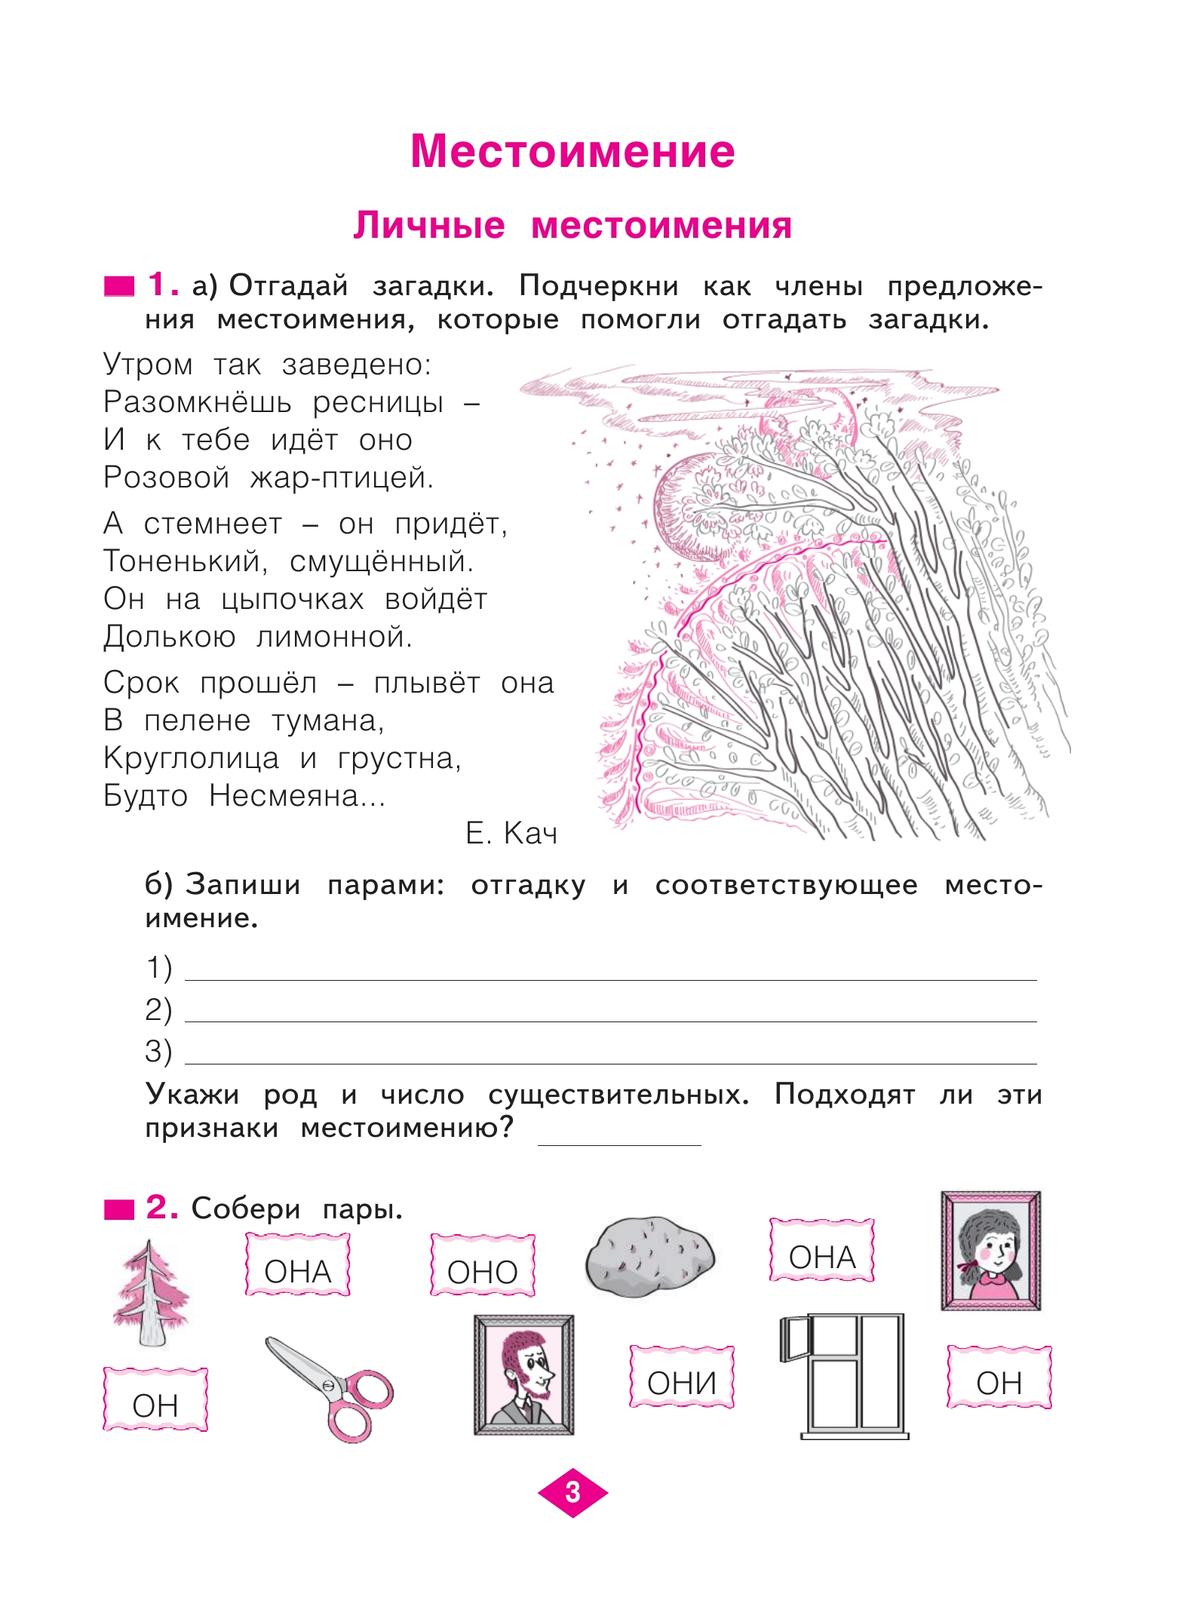 Русский язык. Рабочая тетрадь. 4 класс. В 4-х частях. Часть 2 6